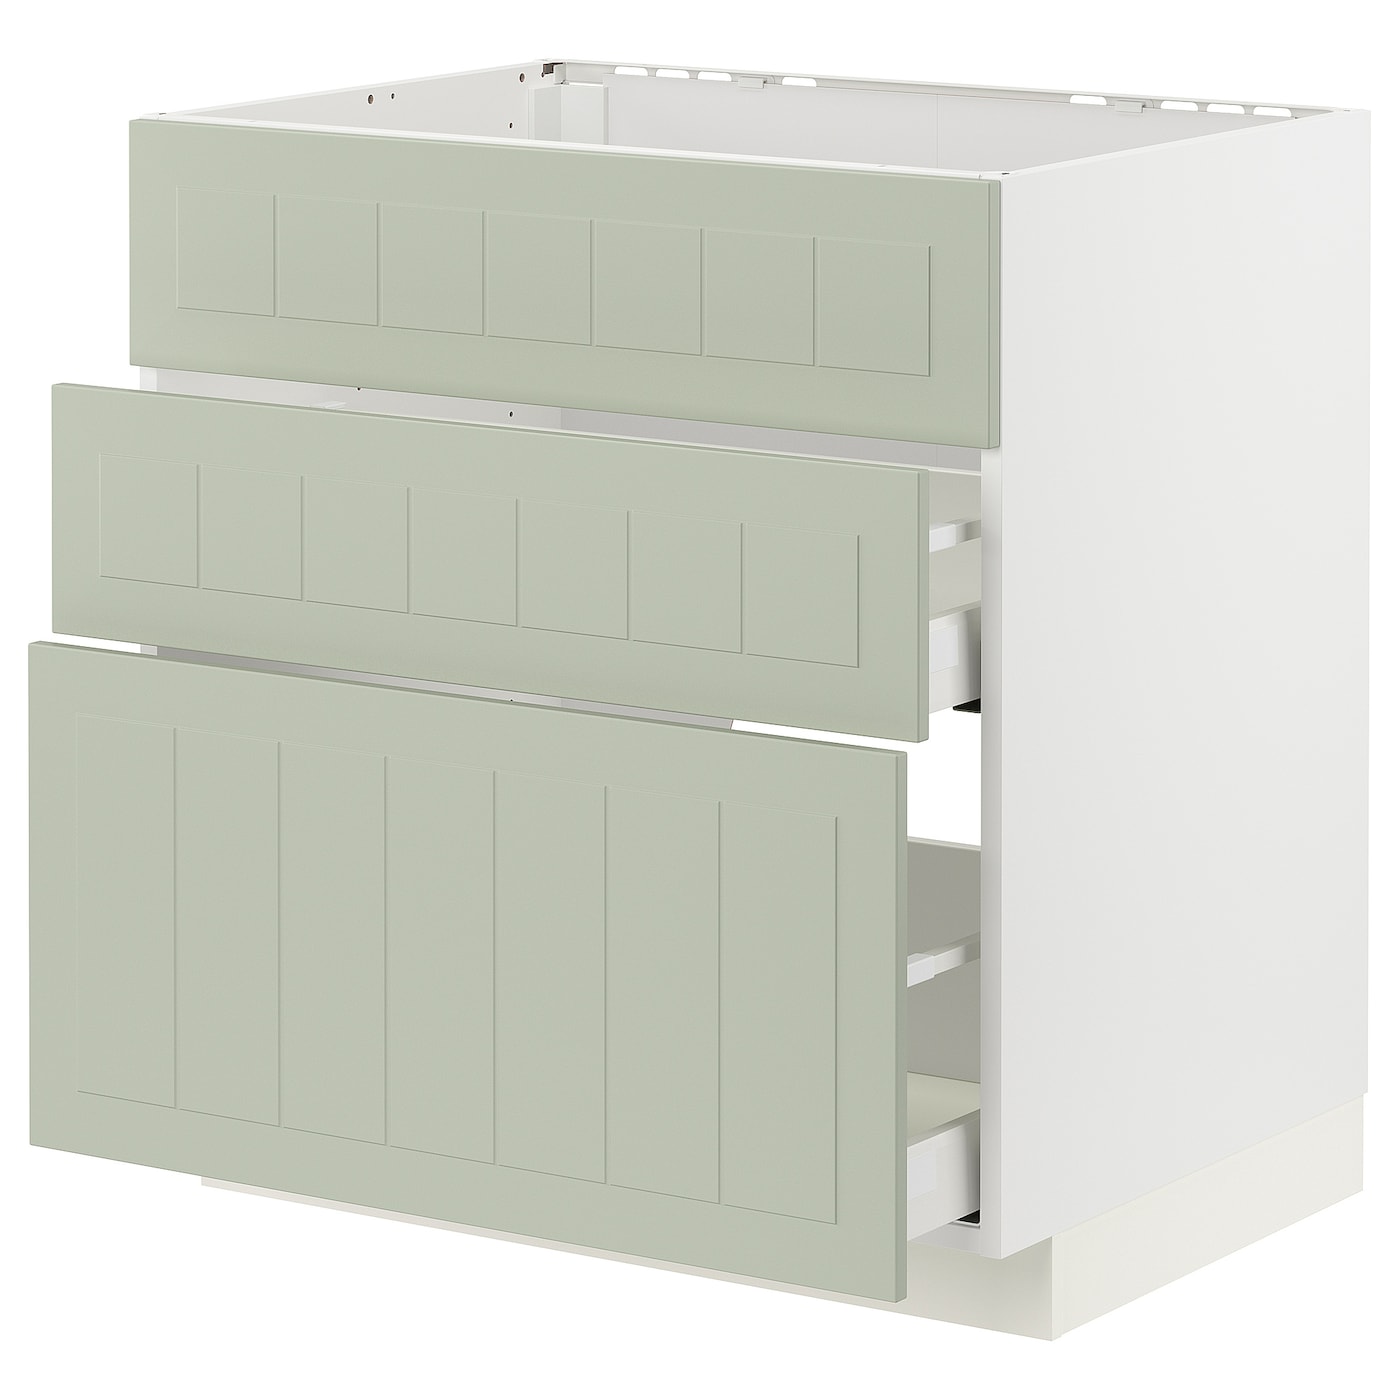 Напольный кухонный шкаф  - IKEA METOD MAXIMERA, 88x61,9x80см, белый/светло-зеленый, МЕТОД МАКСИМЕРА ИКЕА